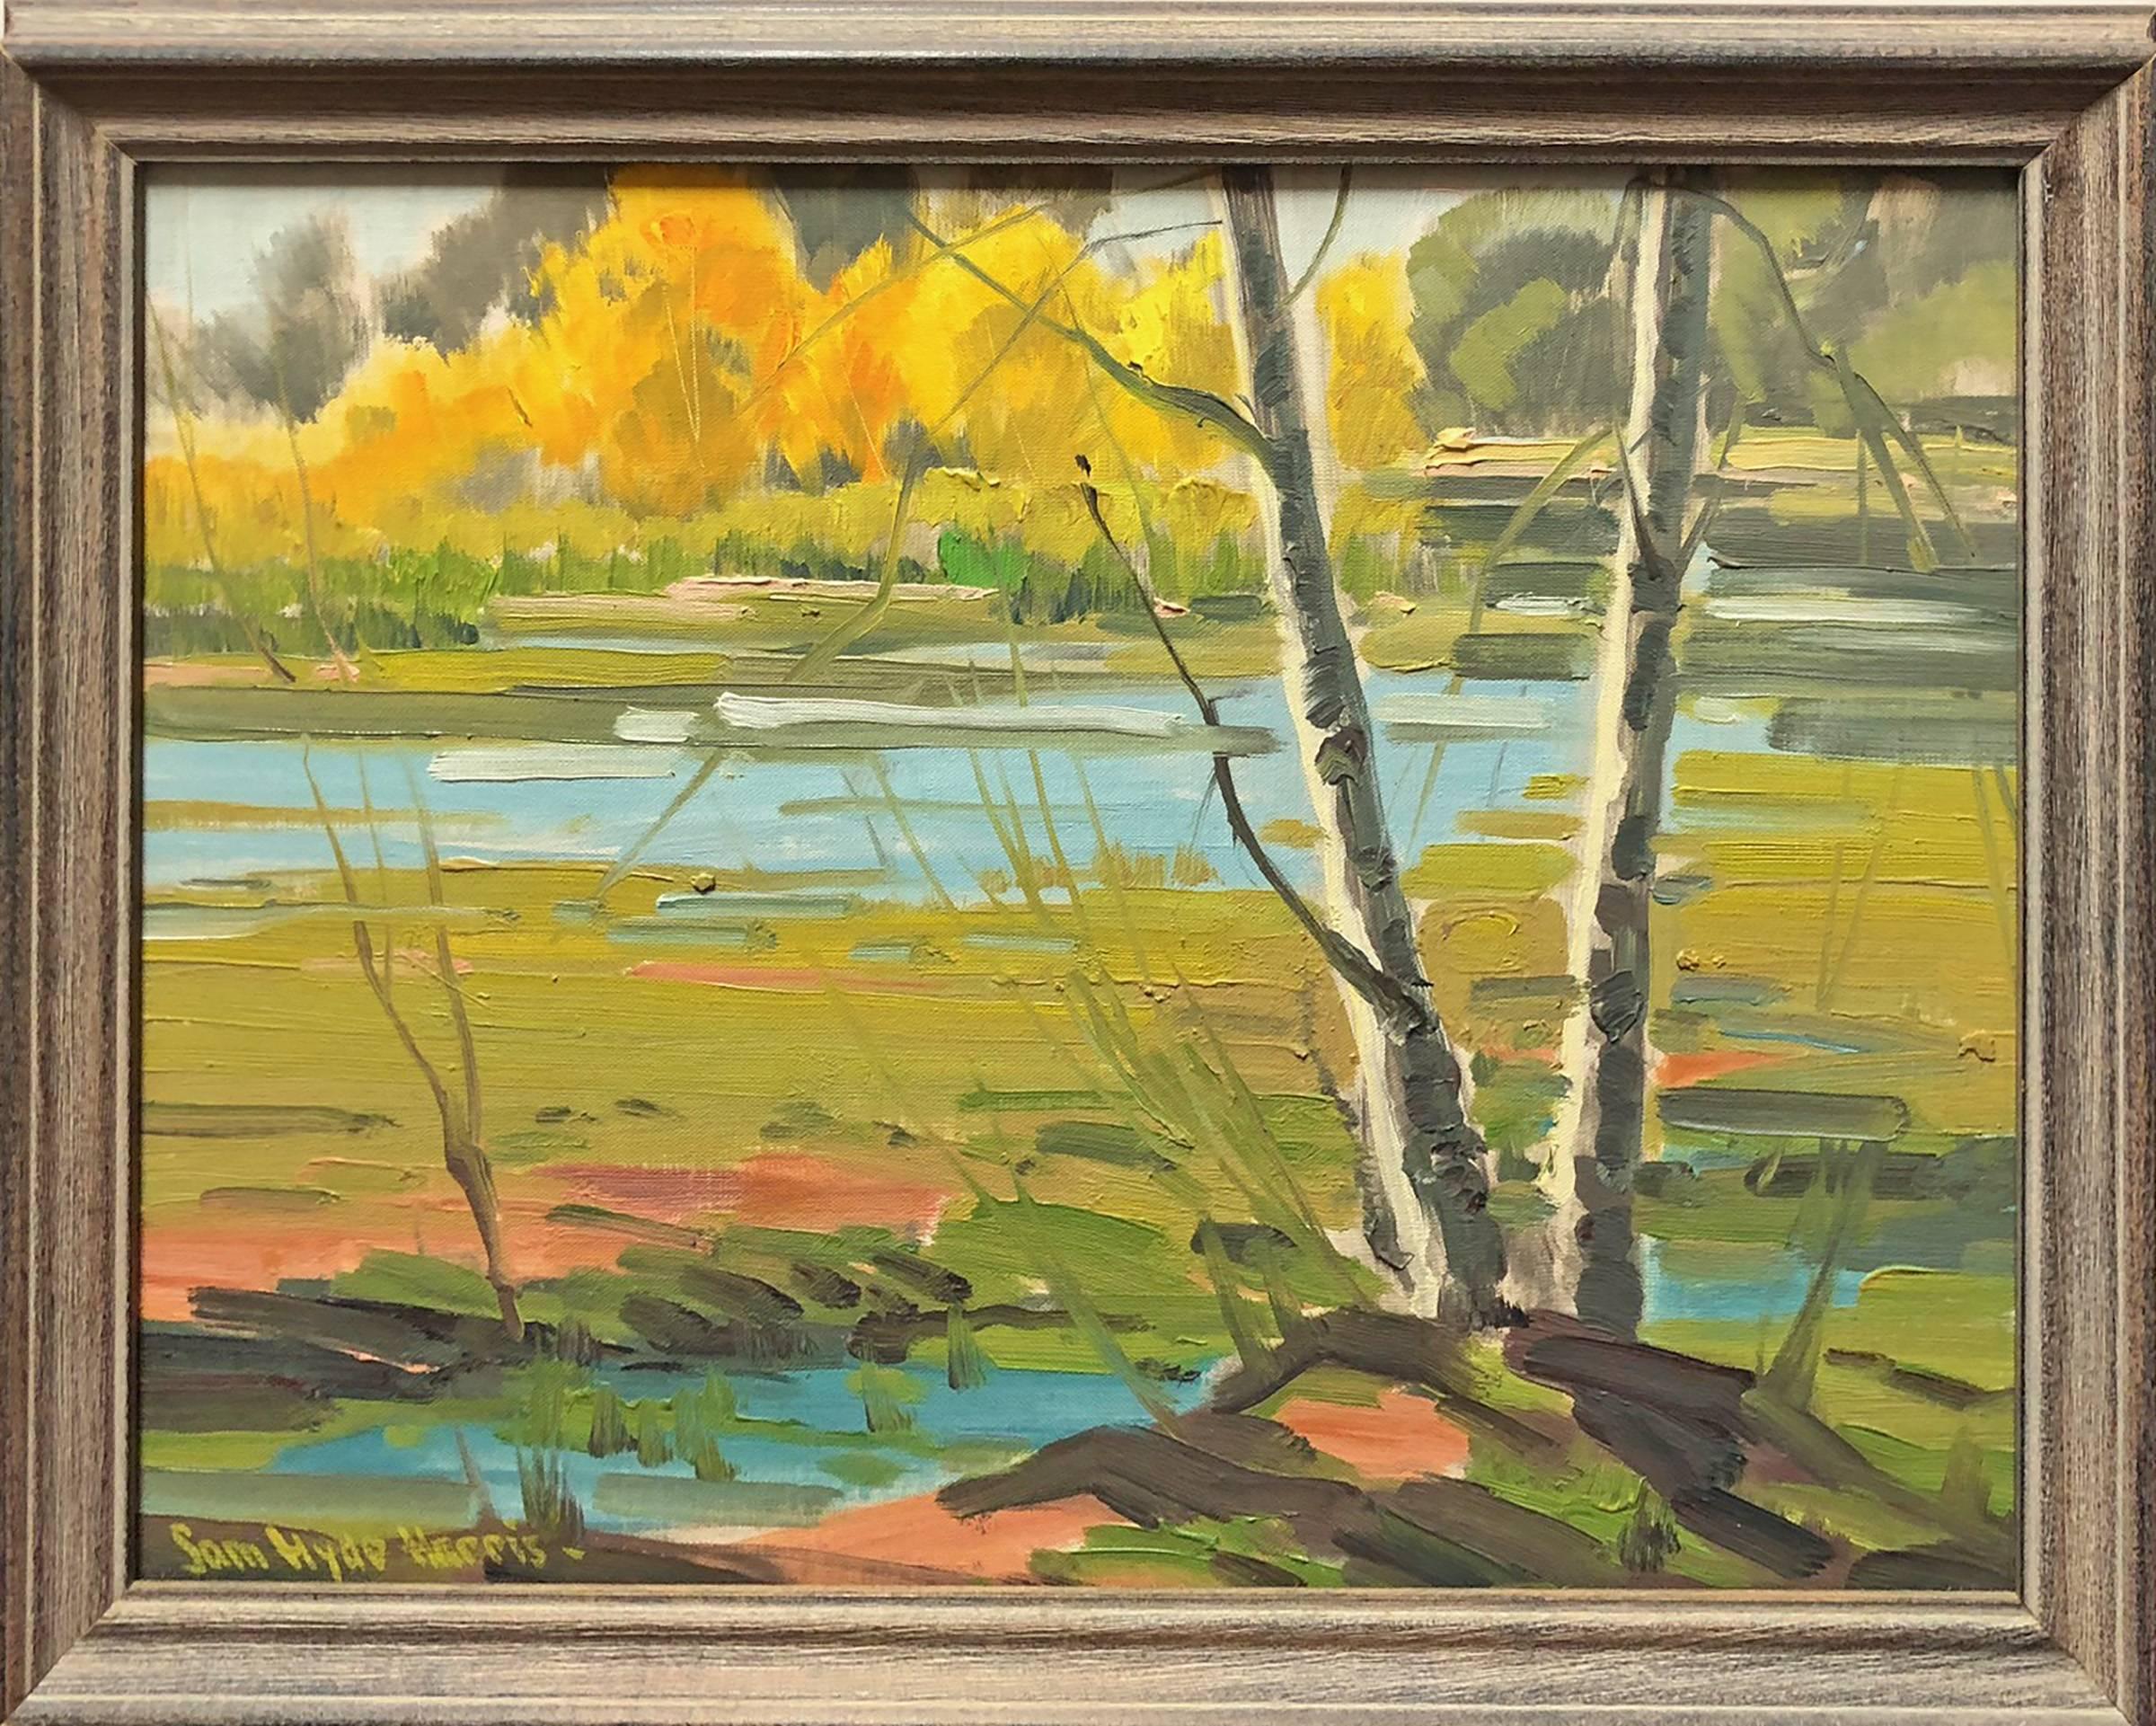 Am Fluss entlang des Flusses – Painting von Samuel Hyde Harris